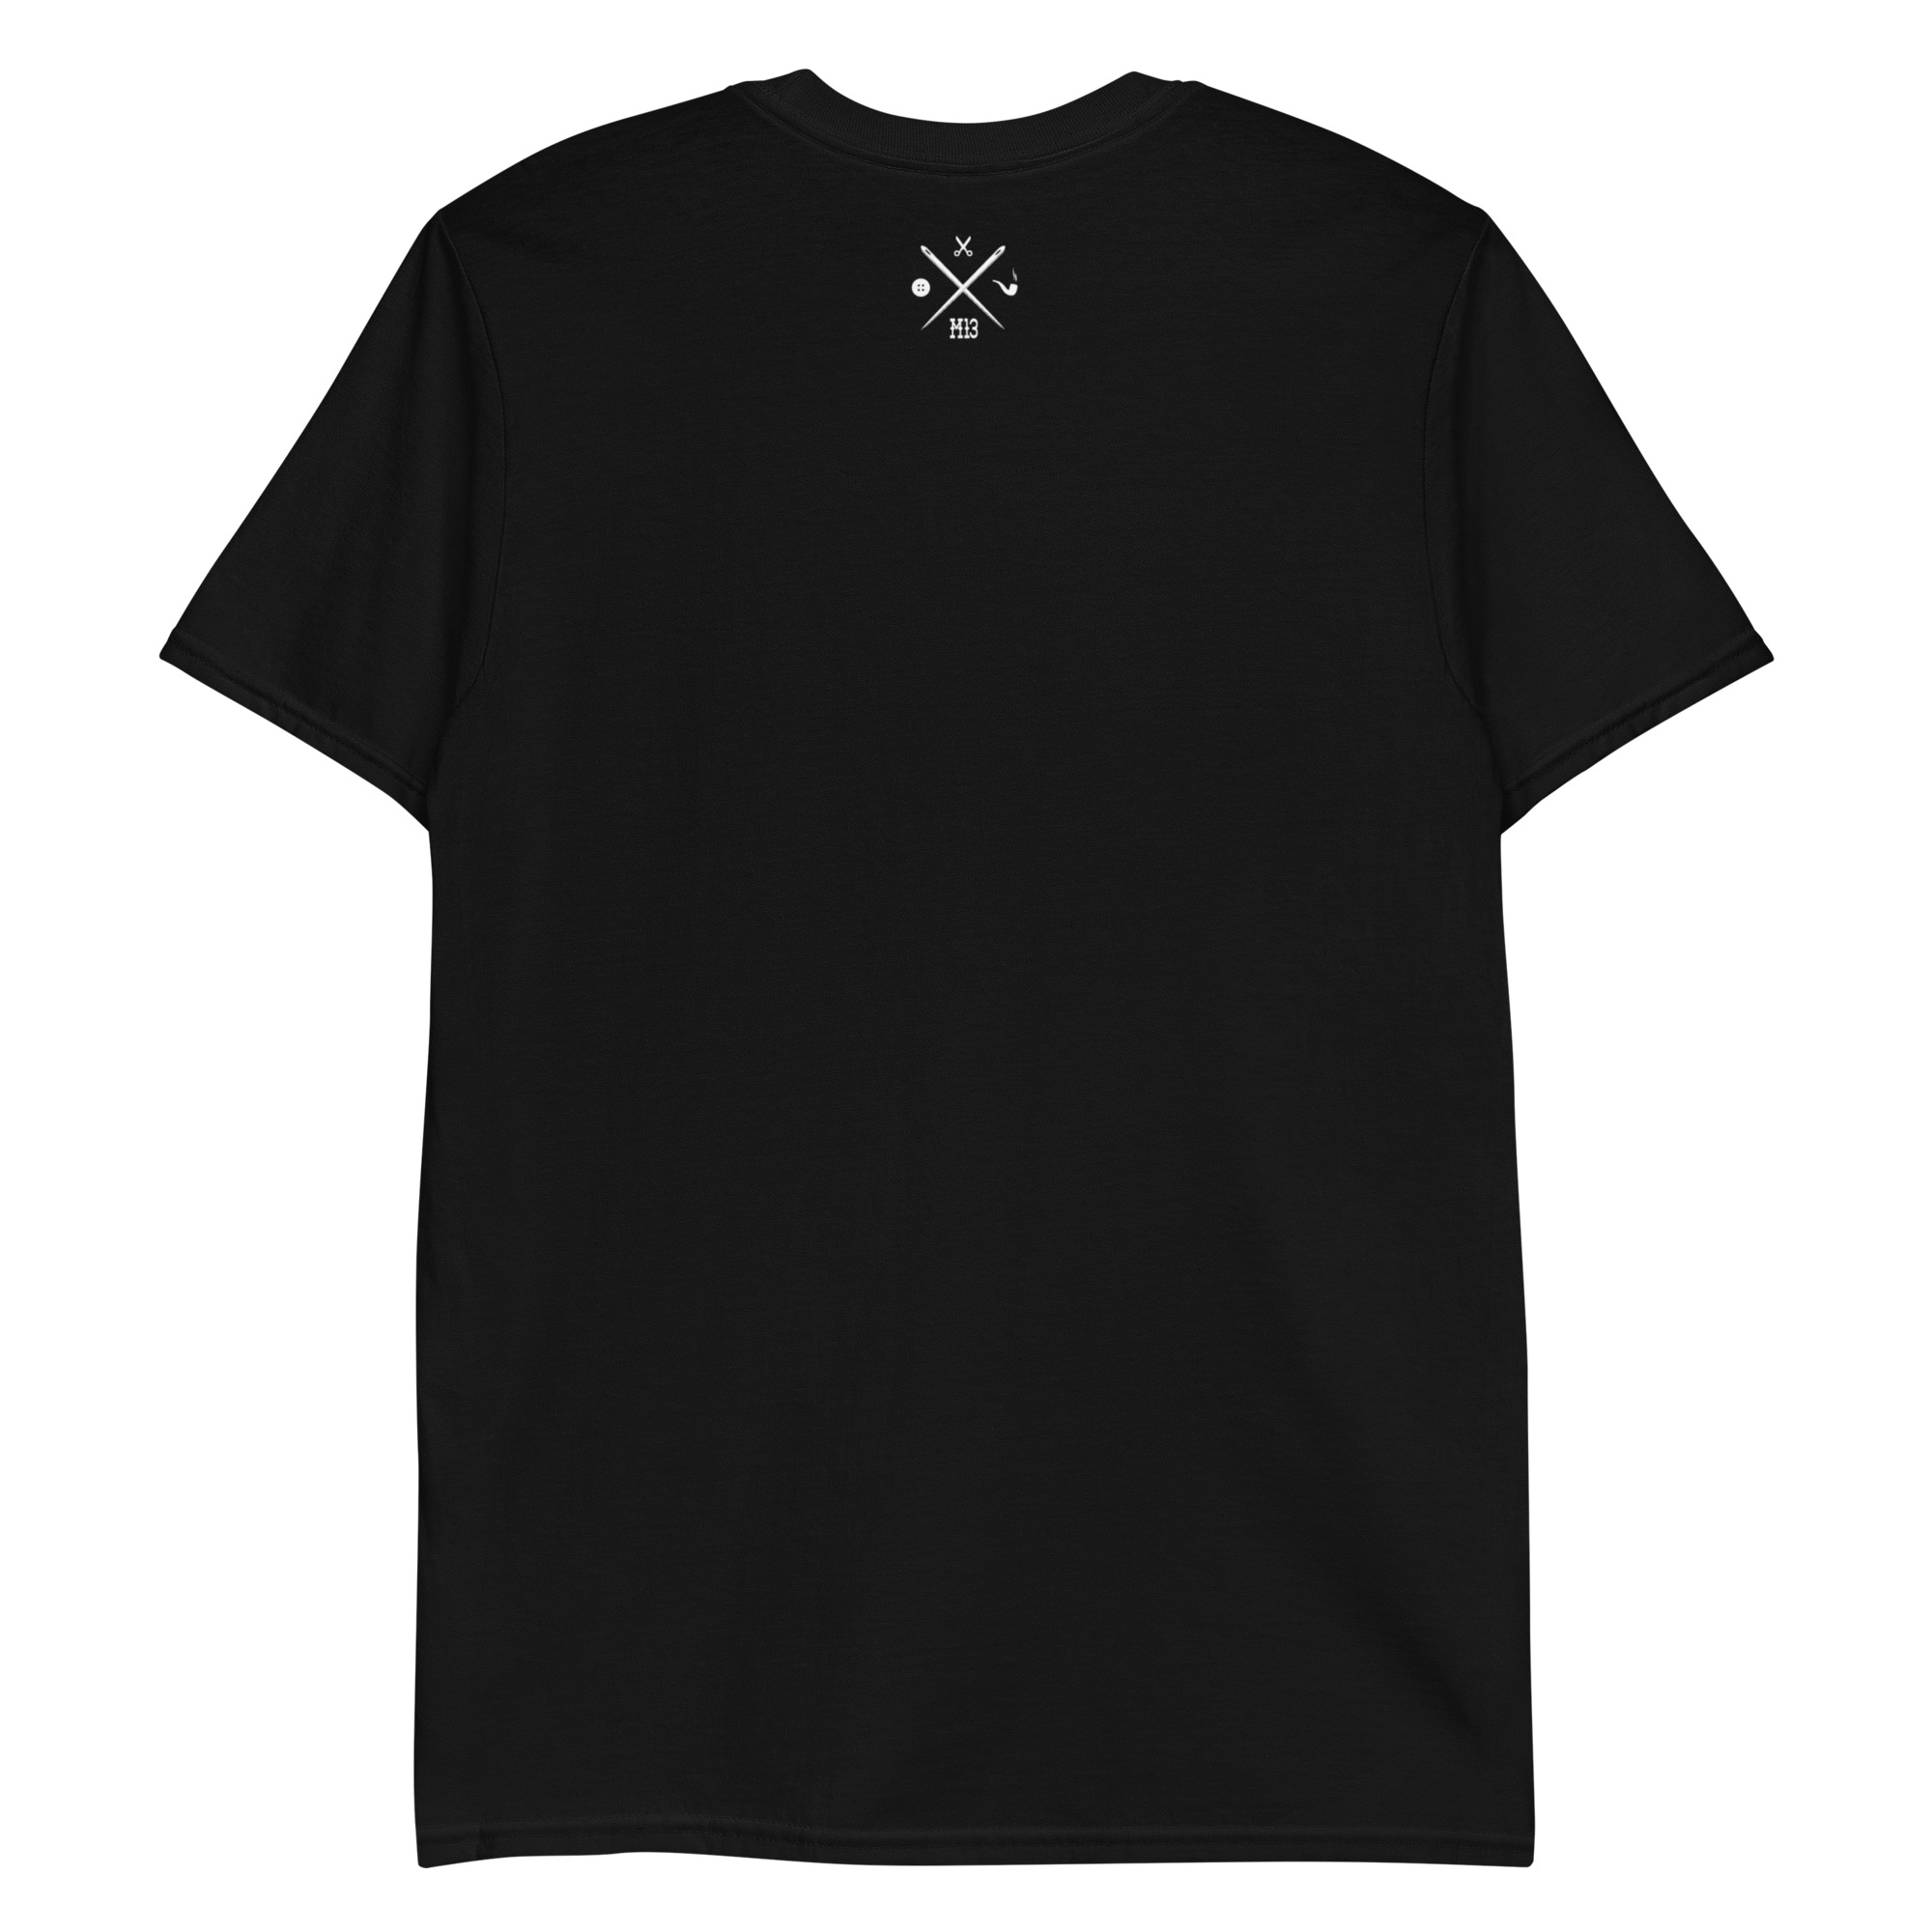 unisex-basic-softstyle-t-shirt-black-back-64edb644cfb5f.jpg